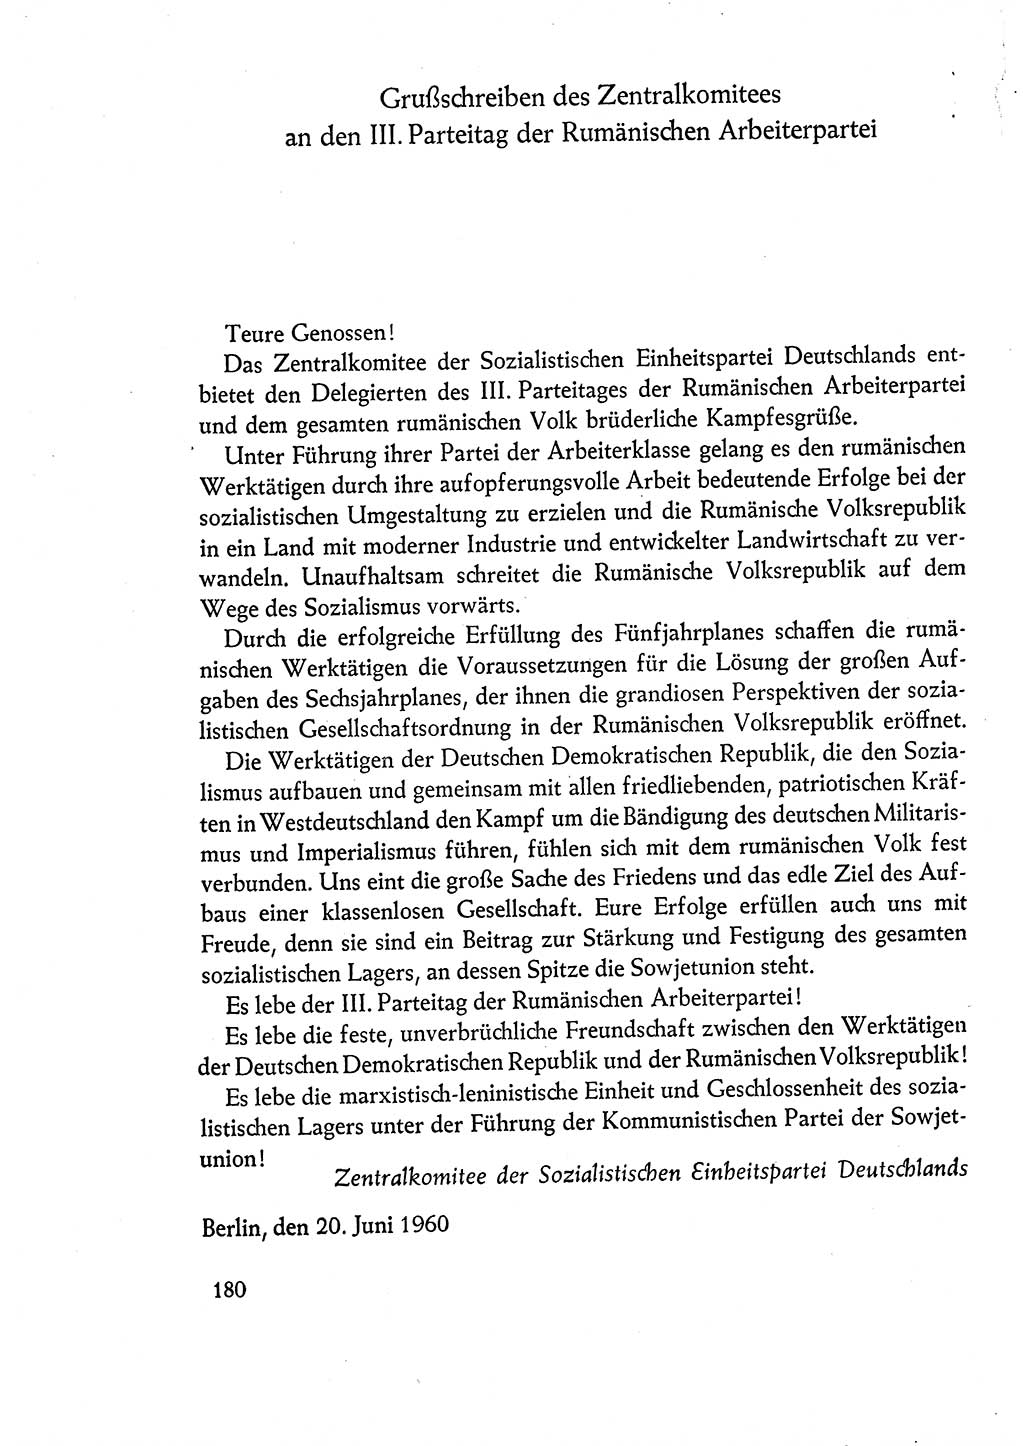 Dokumente der Sozialistischen Einheitspartei Deutschlands (SED) [Deutsche Demokratische Republik (DDR)] 1960-1961, Seite 180 (Dok. SED DDR 1960-1961, S. 180)